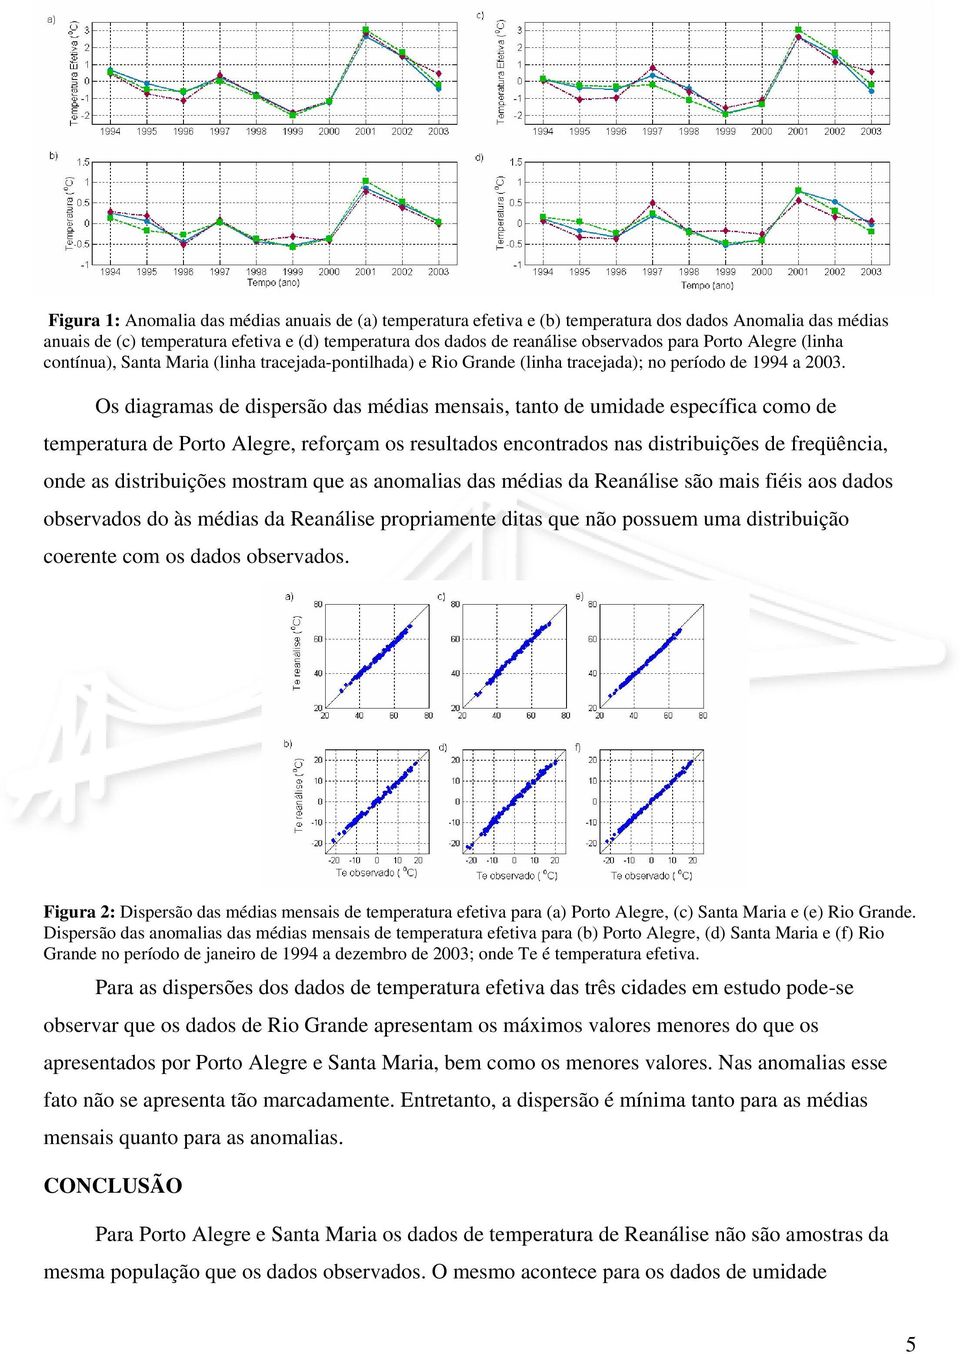 Os diagramas de dispersão das médias mensais, tanto de umidade específica como de temperatura de Porto Alegre, reforçam os resultados encontrados nas distribuições de freqüência, onde as